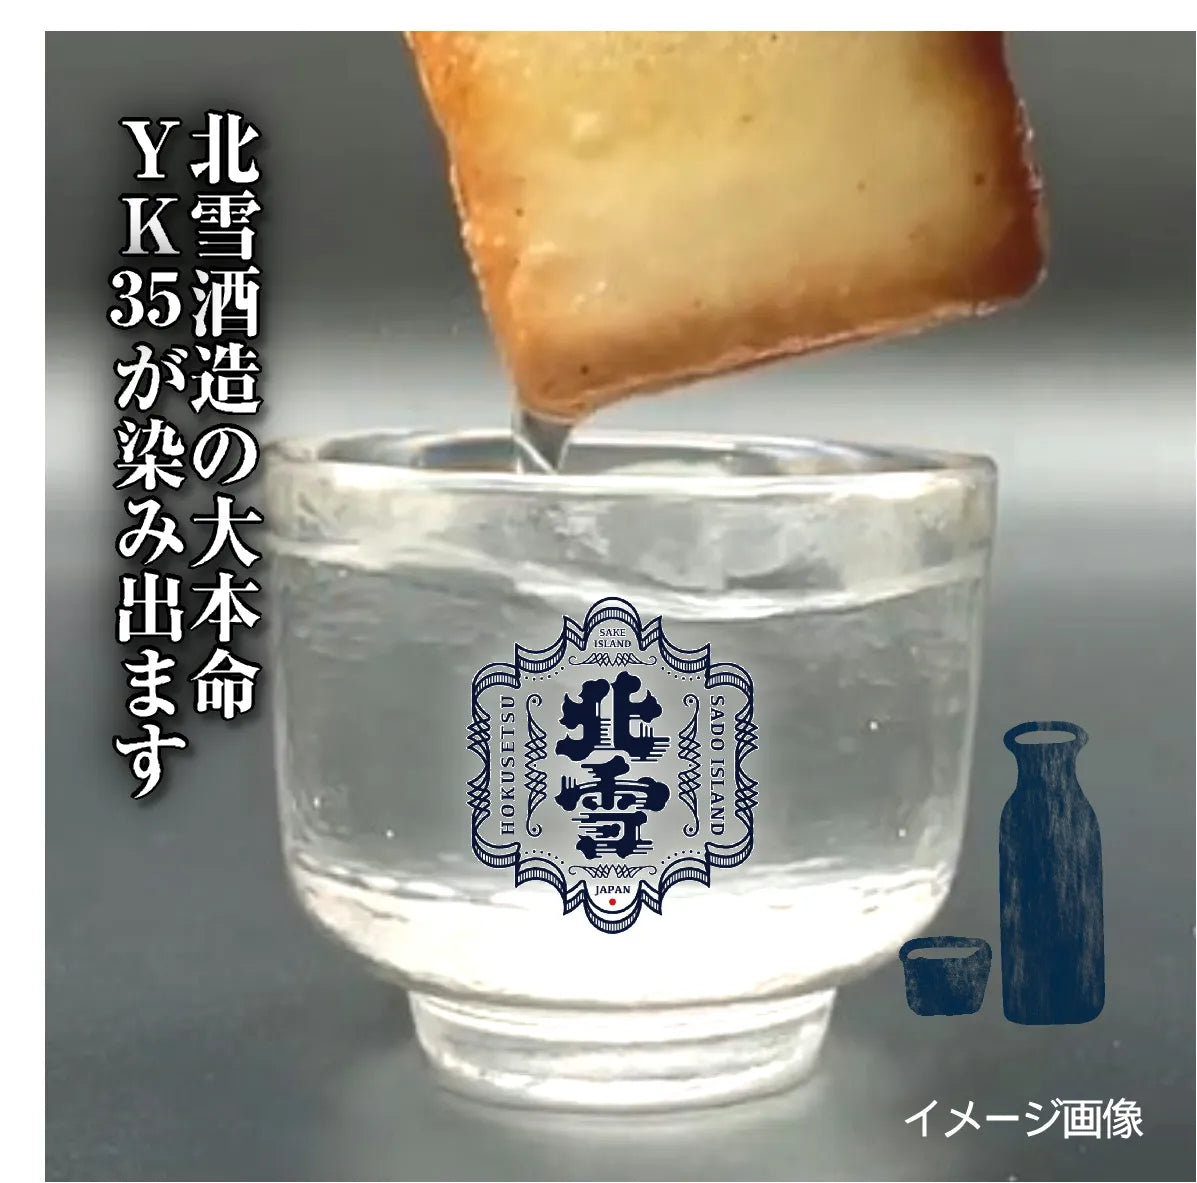 「佐渡日本酒×チーズラングドシャ(8枚入り)」 口の中で香り高く広がる大吟醸酒の贅沢スイーツ